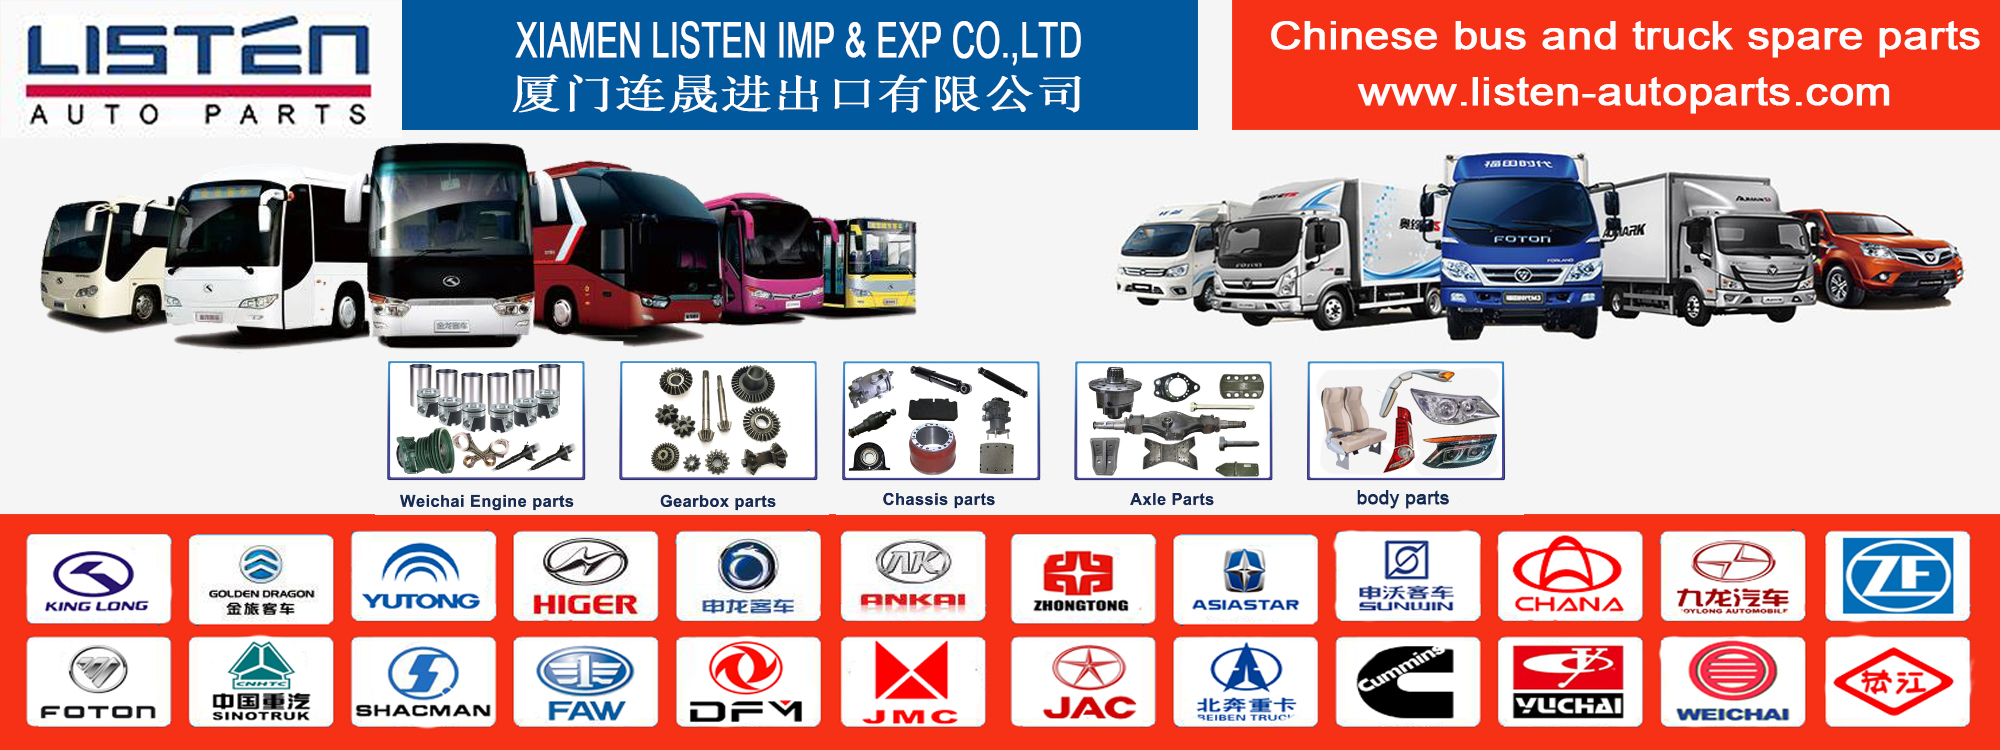 Xiamen Dinle Imp & Exp Co, Ltd